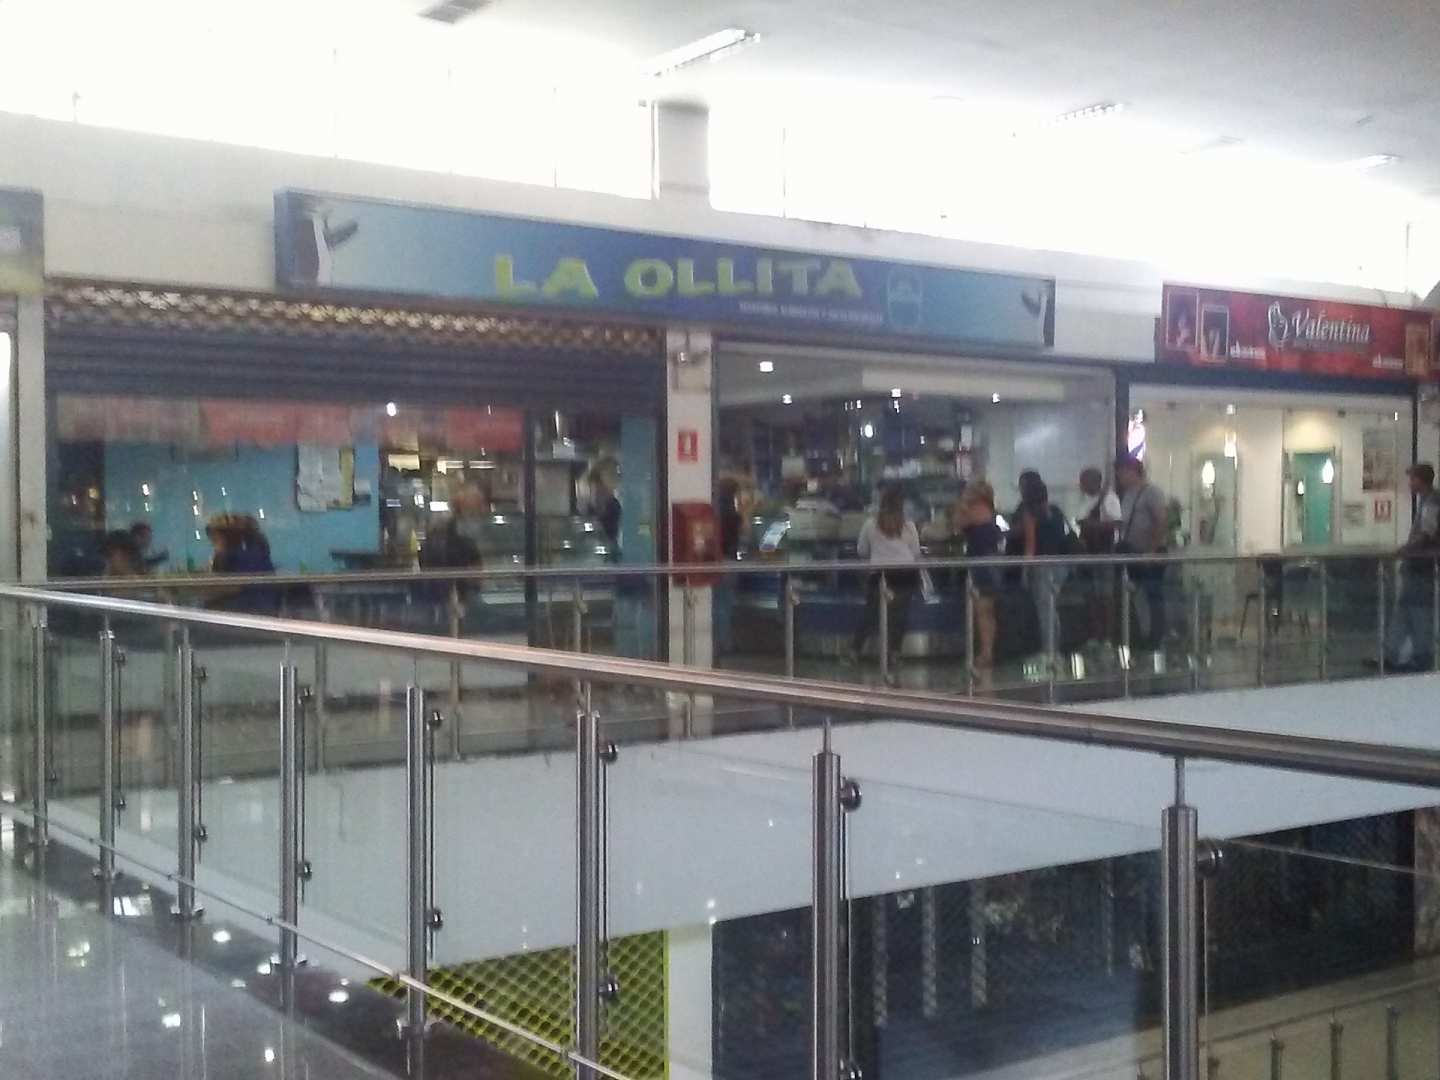 La Ollita